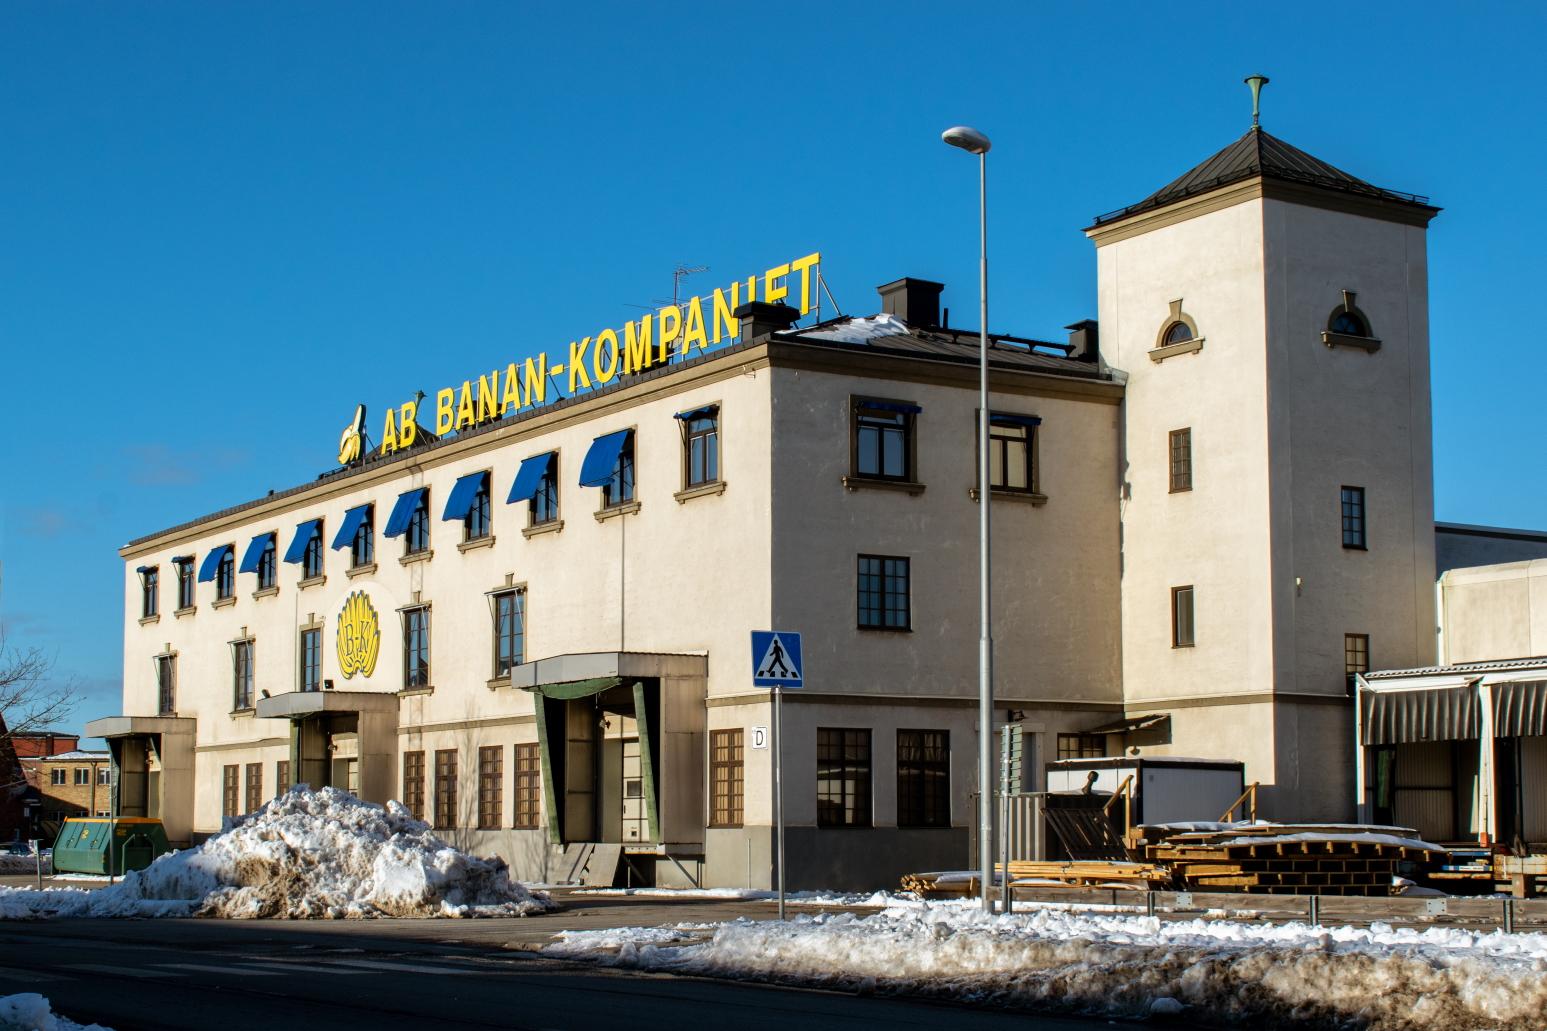 Banan-Kompaniet i Frihamnen blir ny klubb- och konsertlokal – "blir Stockholms största kulturscen"